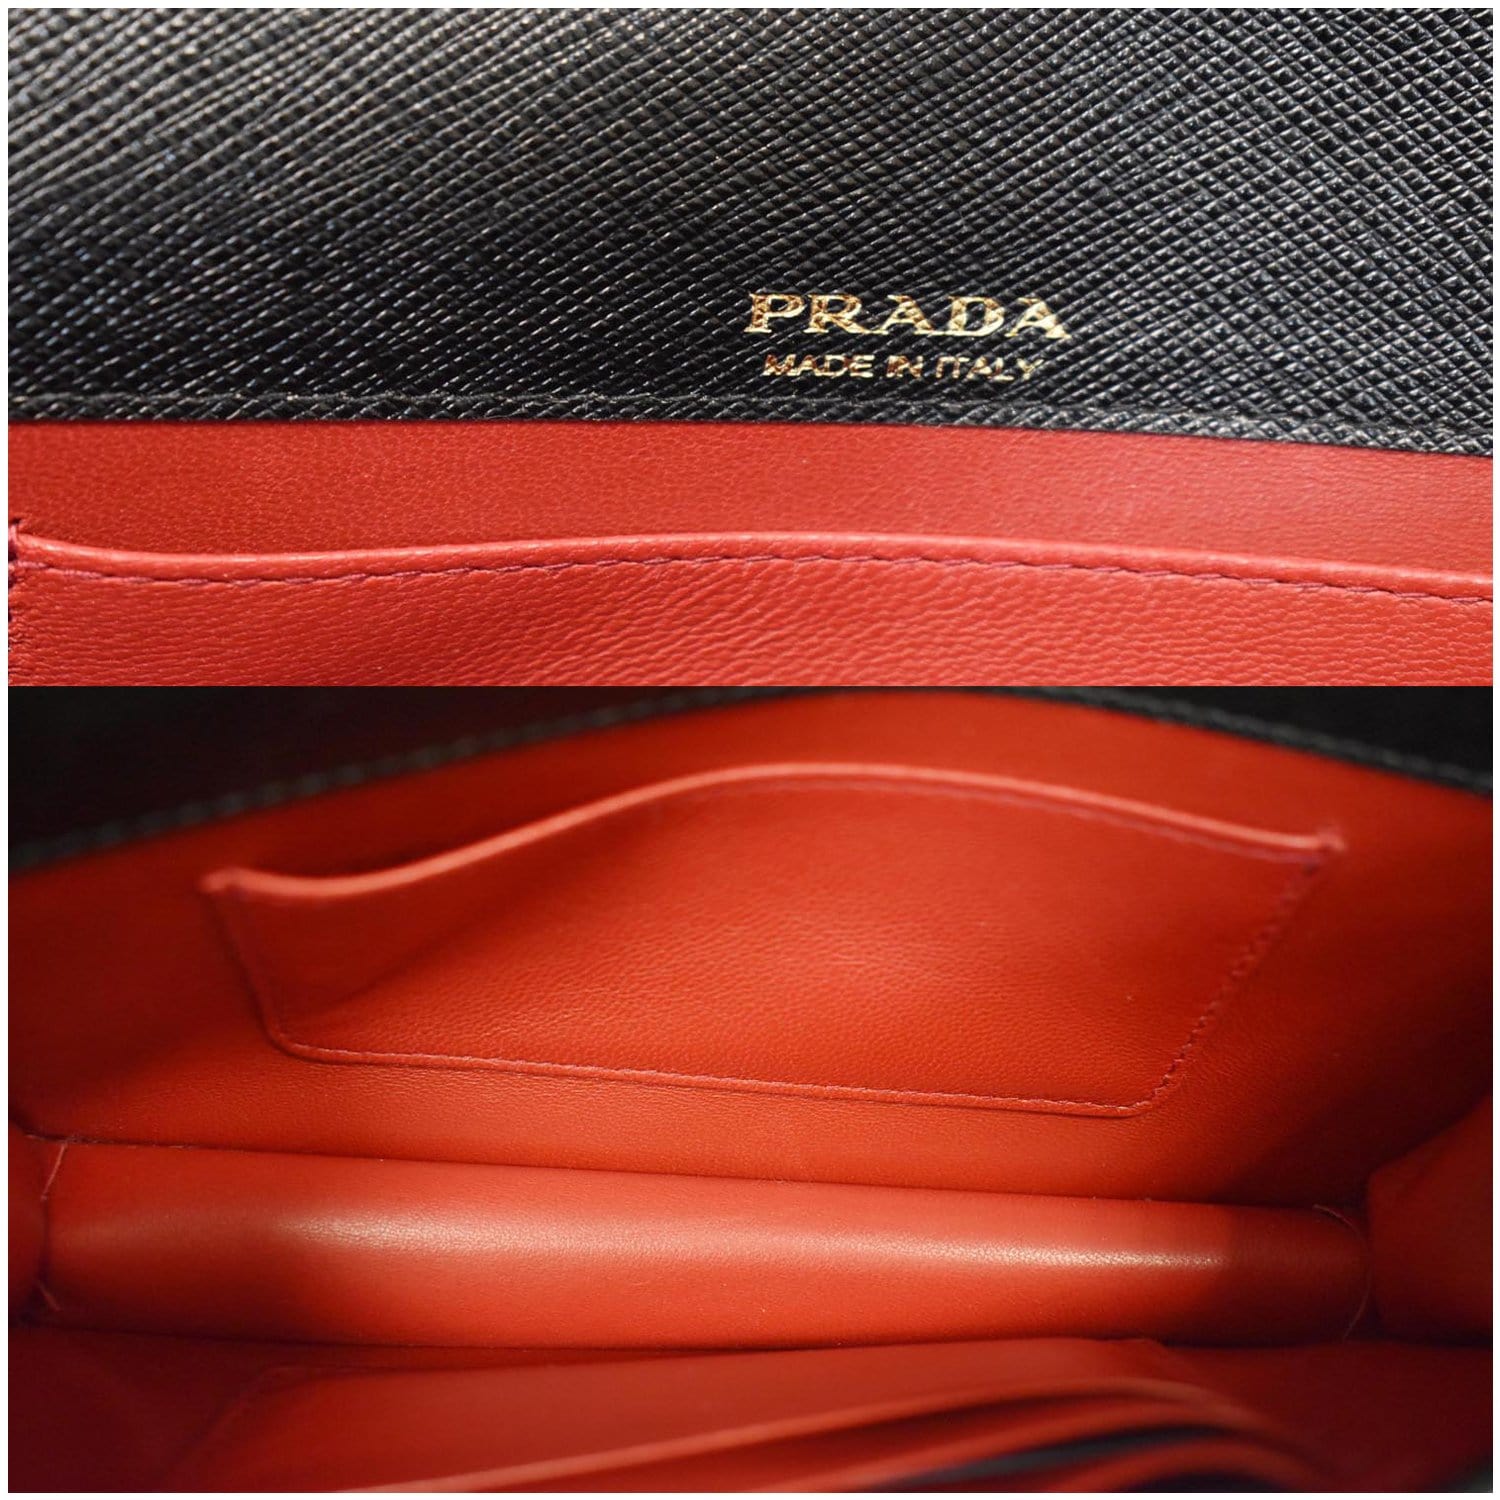 Prada Saffiano mini leather bag - ShopStyle